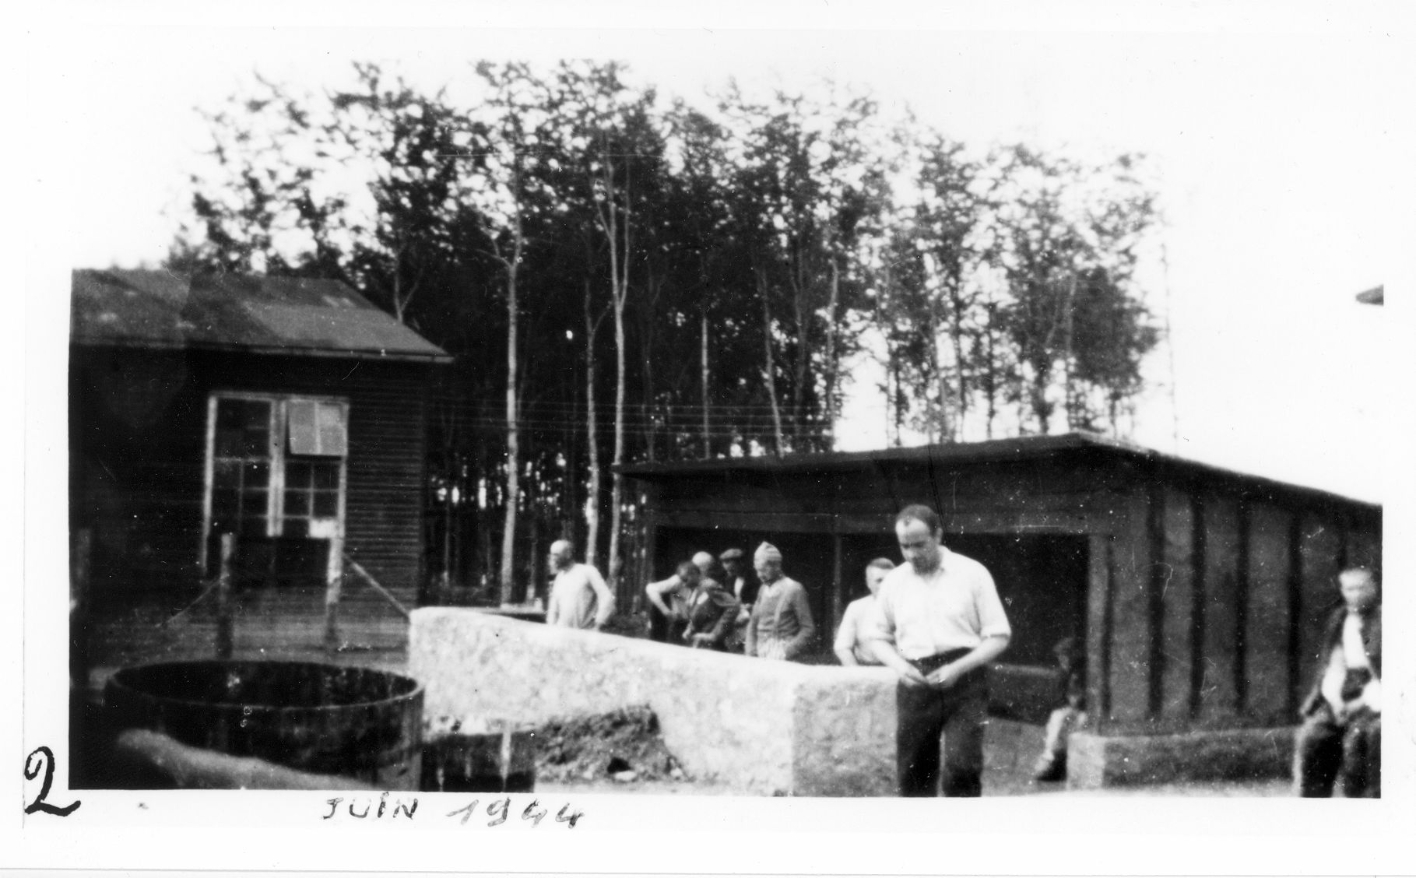 Häftlinge stehen an einer der kleinen Latrinen im Kleinen Lager. Links im Bild die Kinobaracke. Handschriftlich "2" auf linkem unteren Bildrand und "JUIN 1944" auf unterem Bildrand